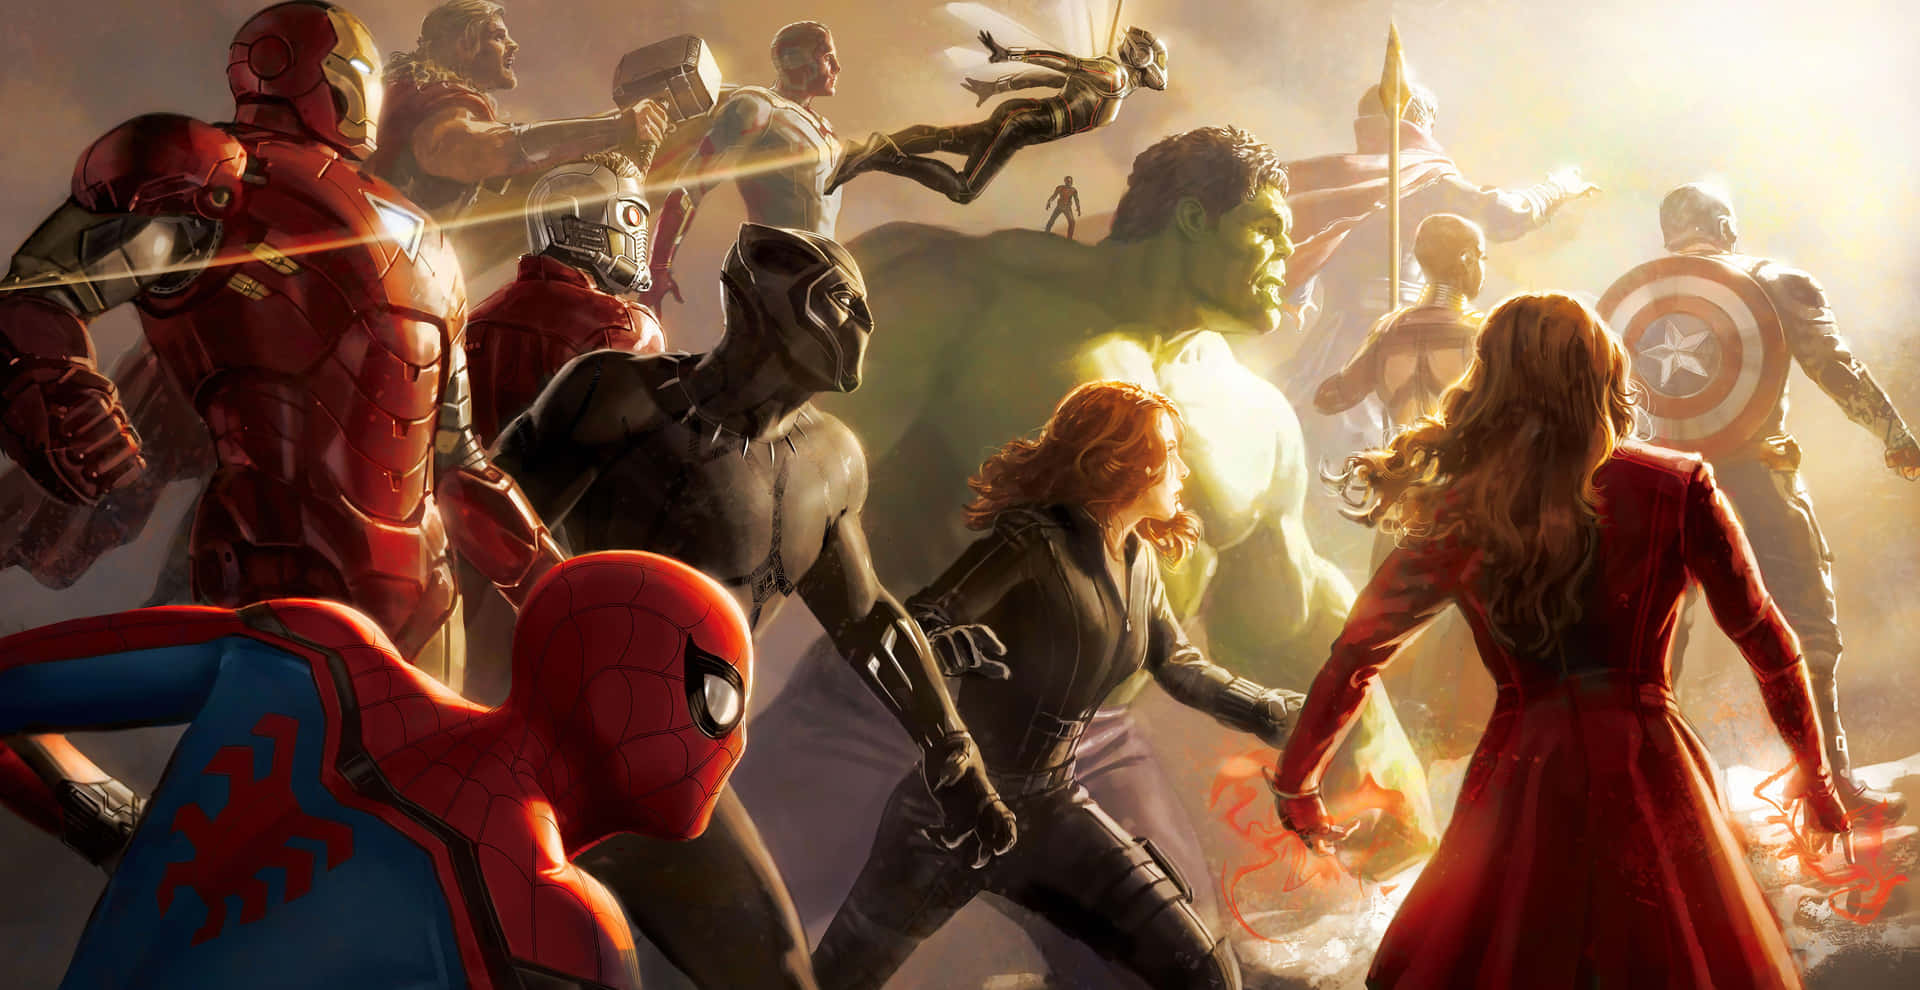 Fantasticoartwork Di Avengers Endgame Durante Le Ore D'oro Sfondo